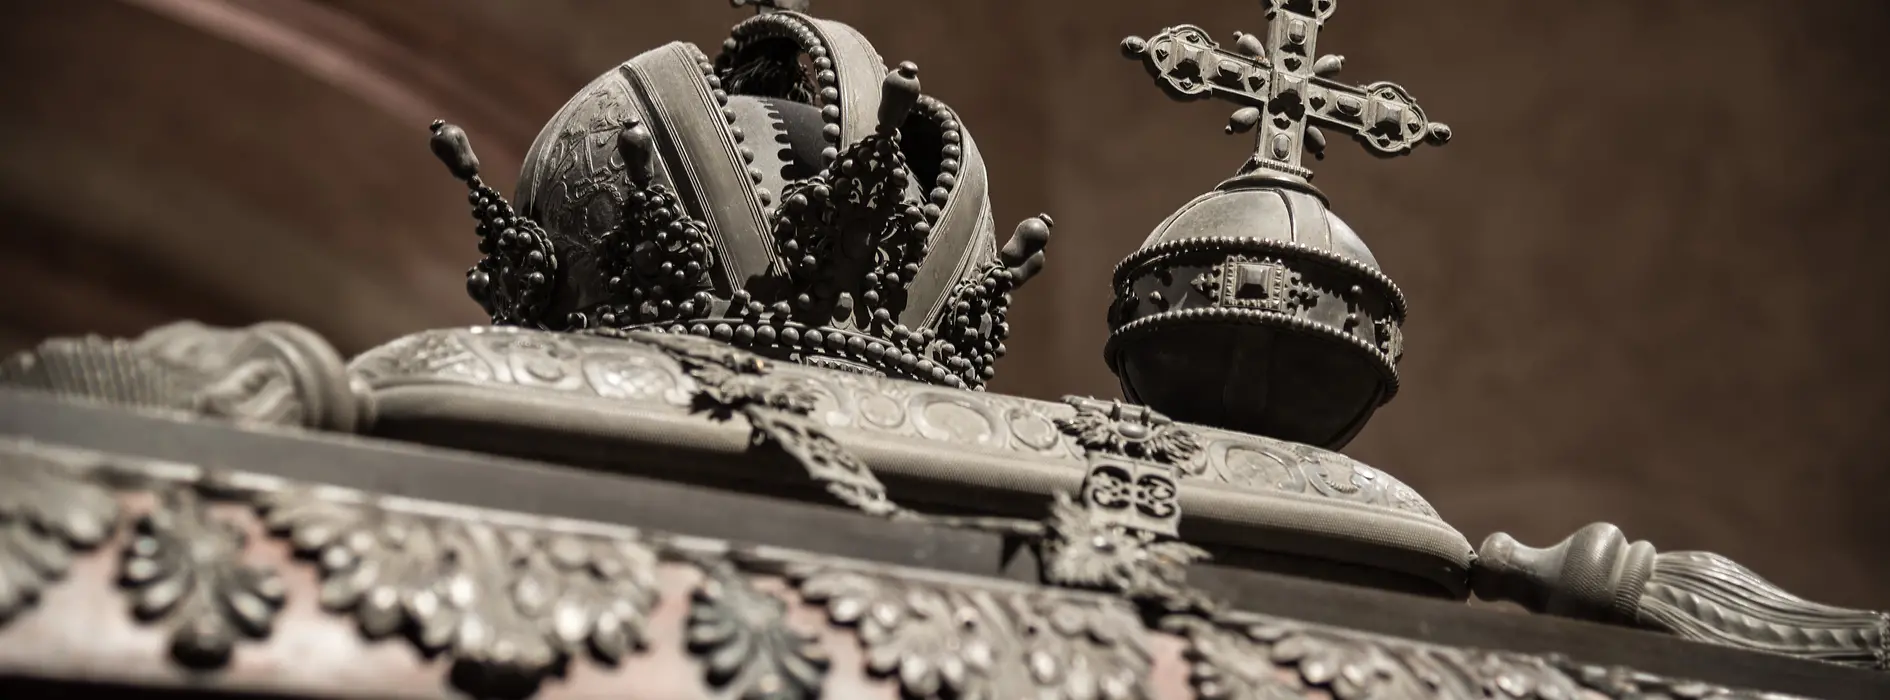 帝国宝珠と帝冠で飾られた棺の蓋